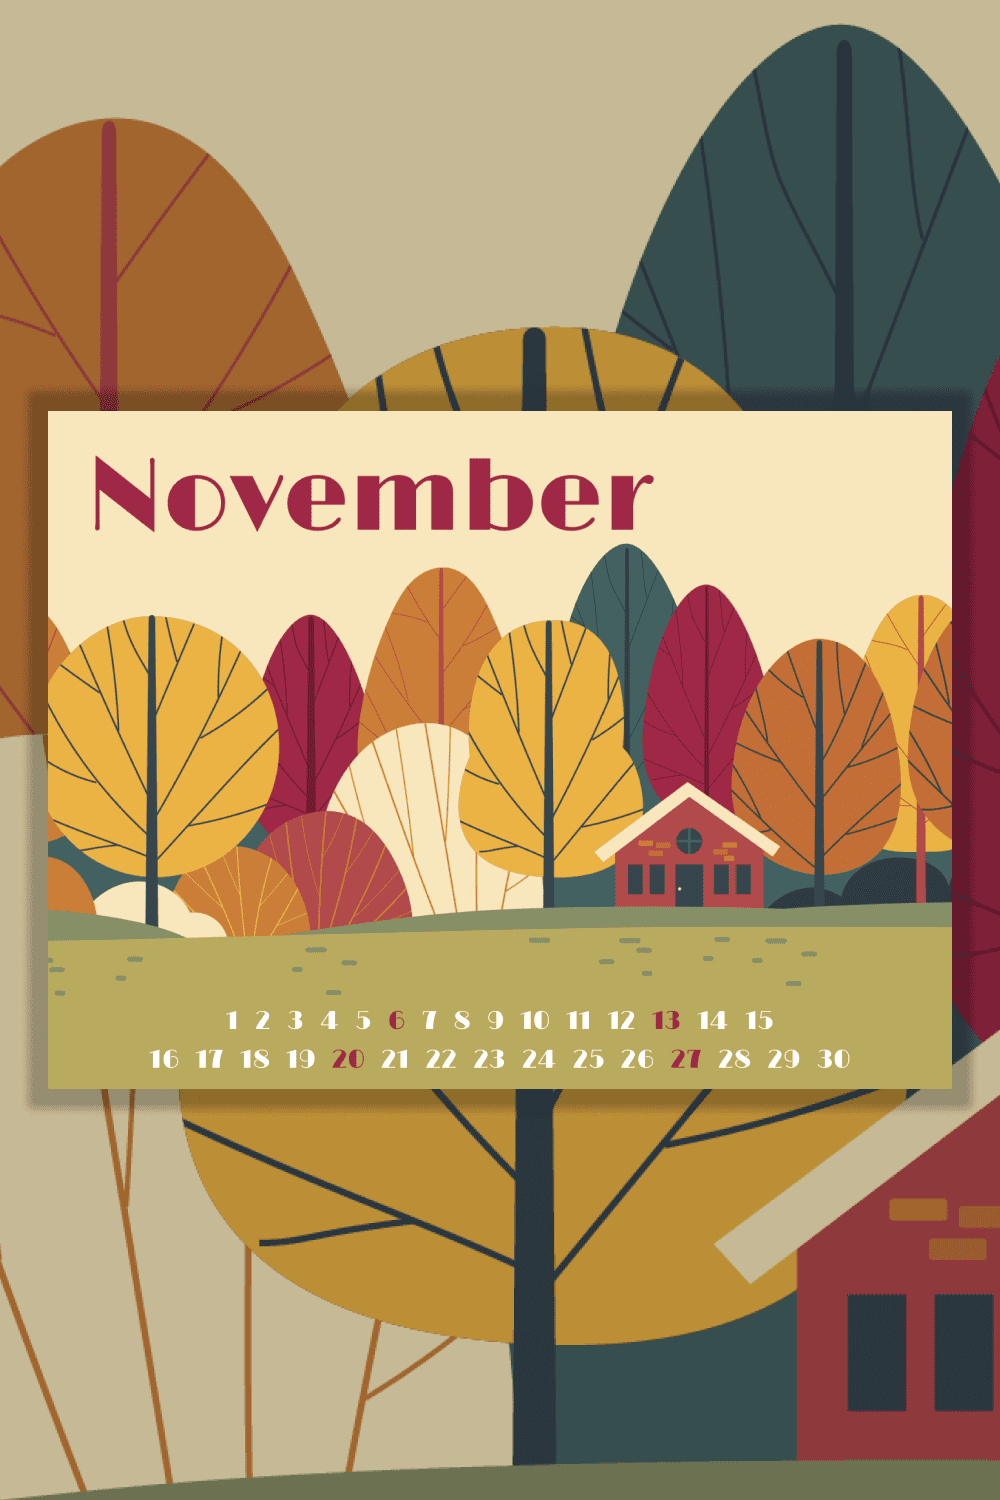 Free calendar for November for Pinterest.